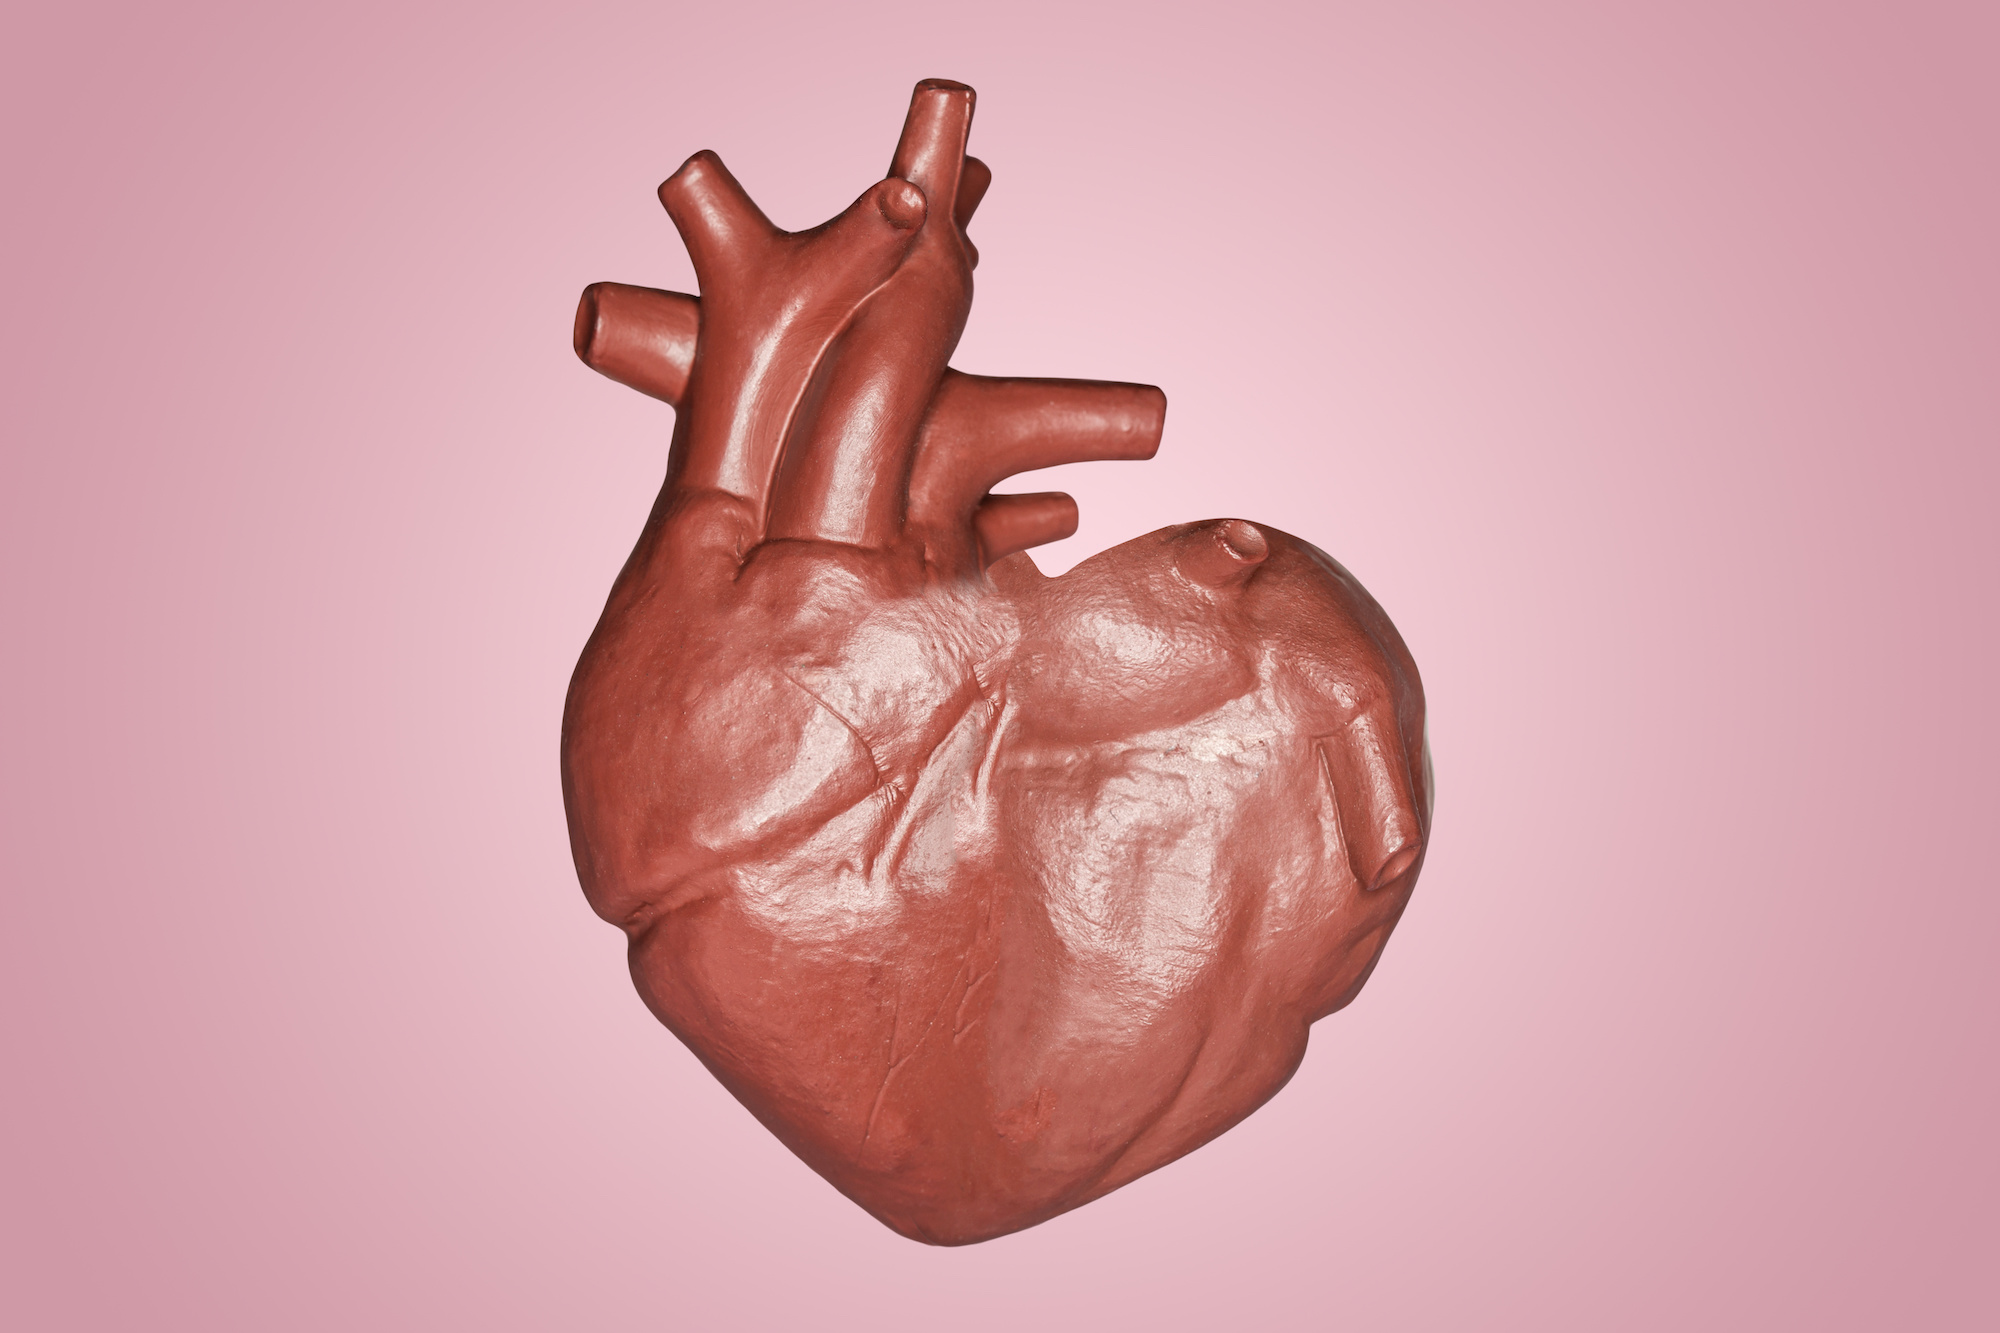 L’endocardite est une inflammation de l’endocarde, la paroir interne du cœur. © Nitiphol, Adobe Stock